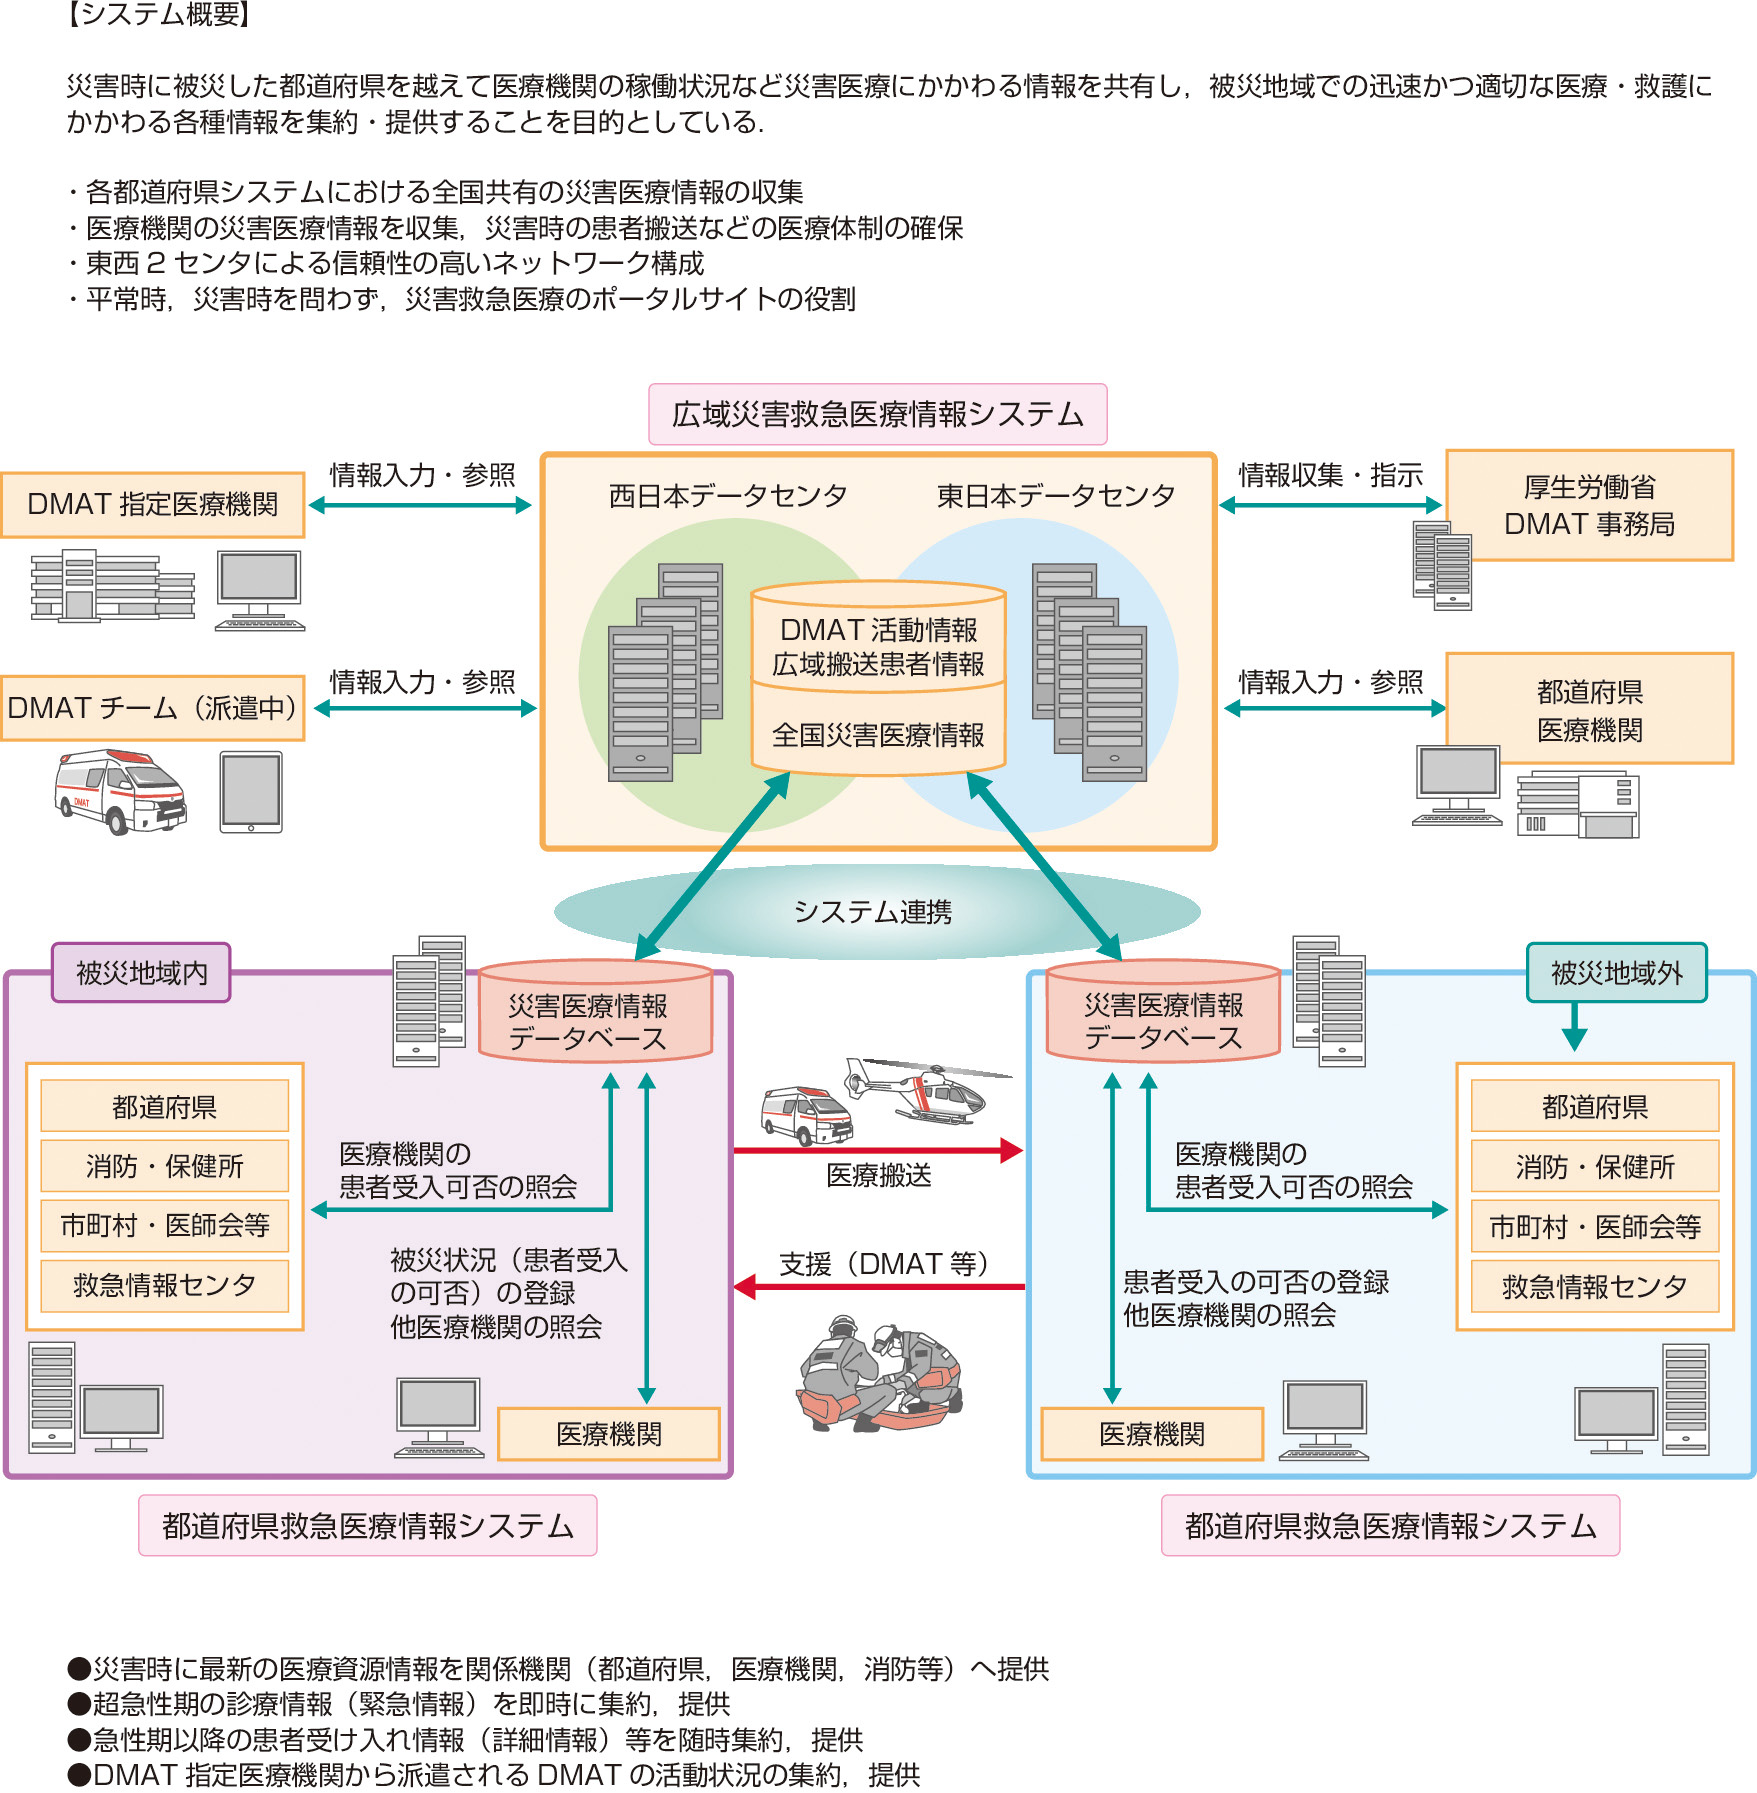 図2　広域災害救急医療情報システム (厚生労働省ホームページ)． 